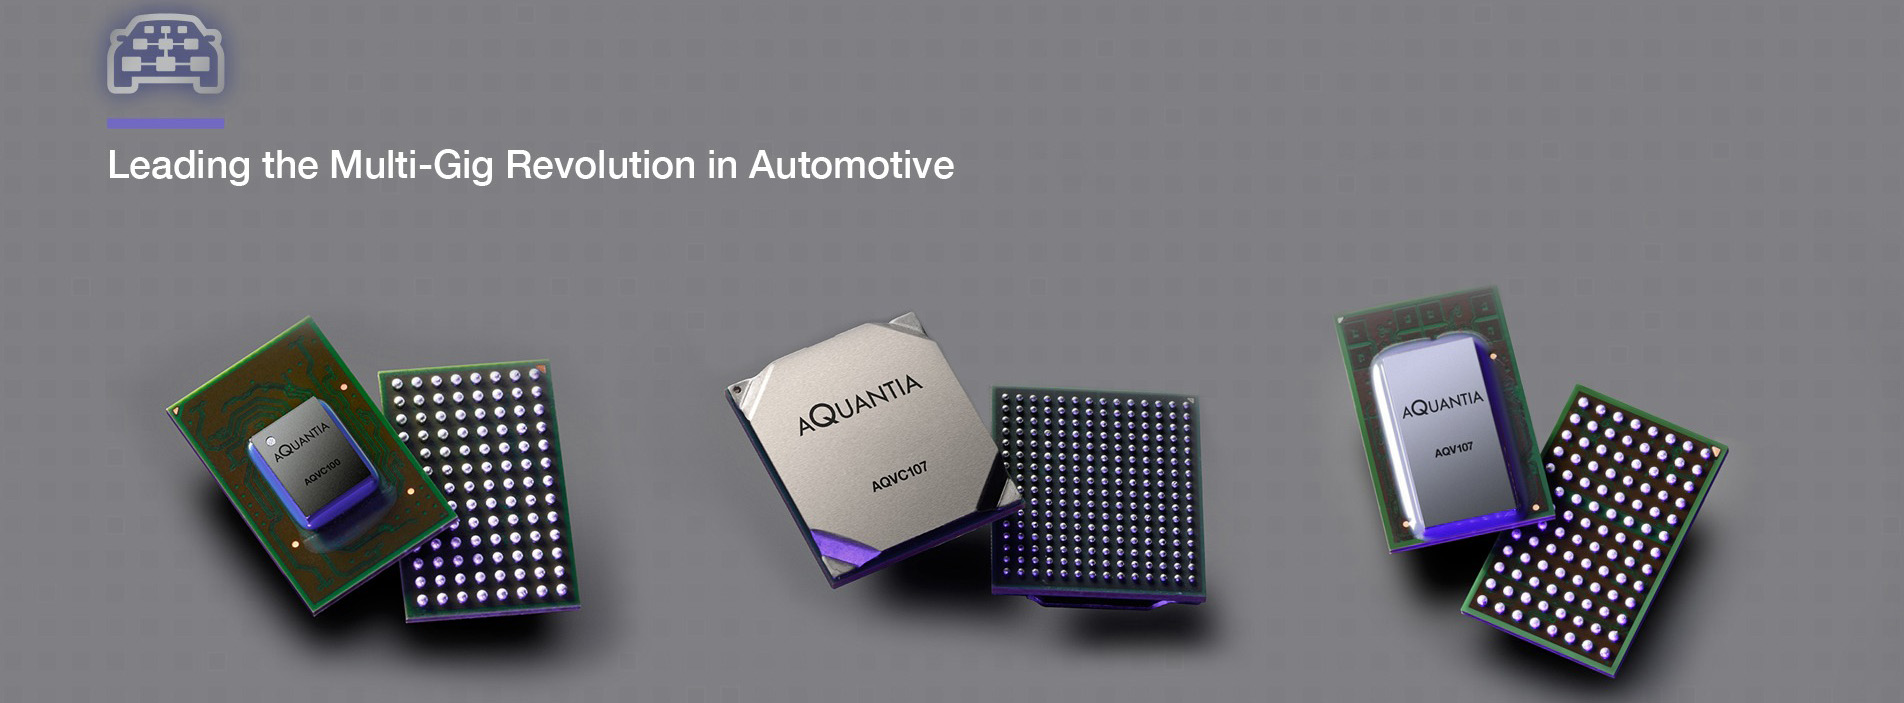 Aquantia cung cấp bộ điều khiển mạng multi-gigabit cho nền tảng xe tự lái của Nvidia